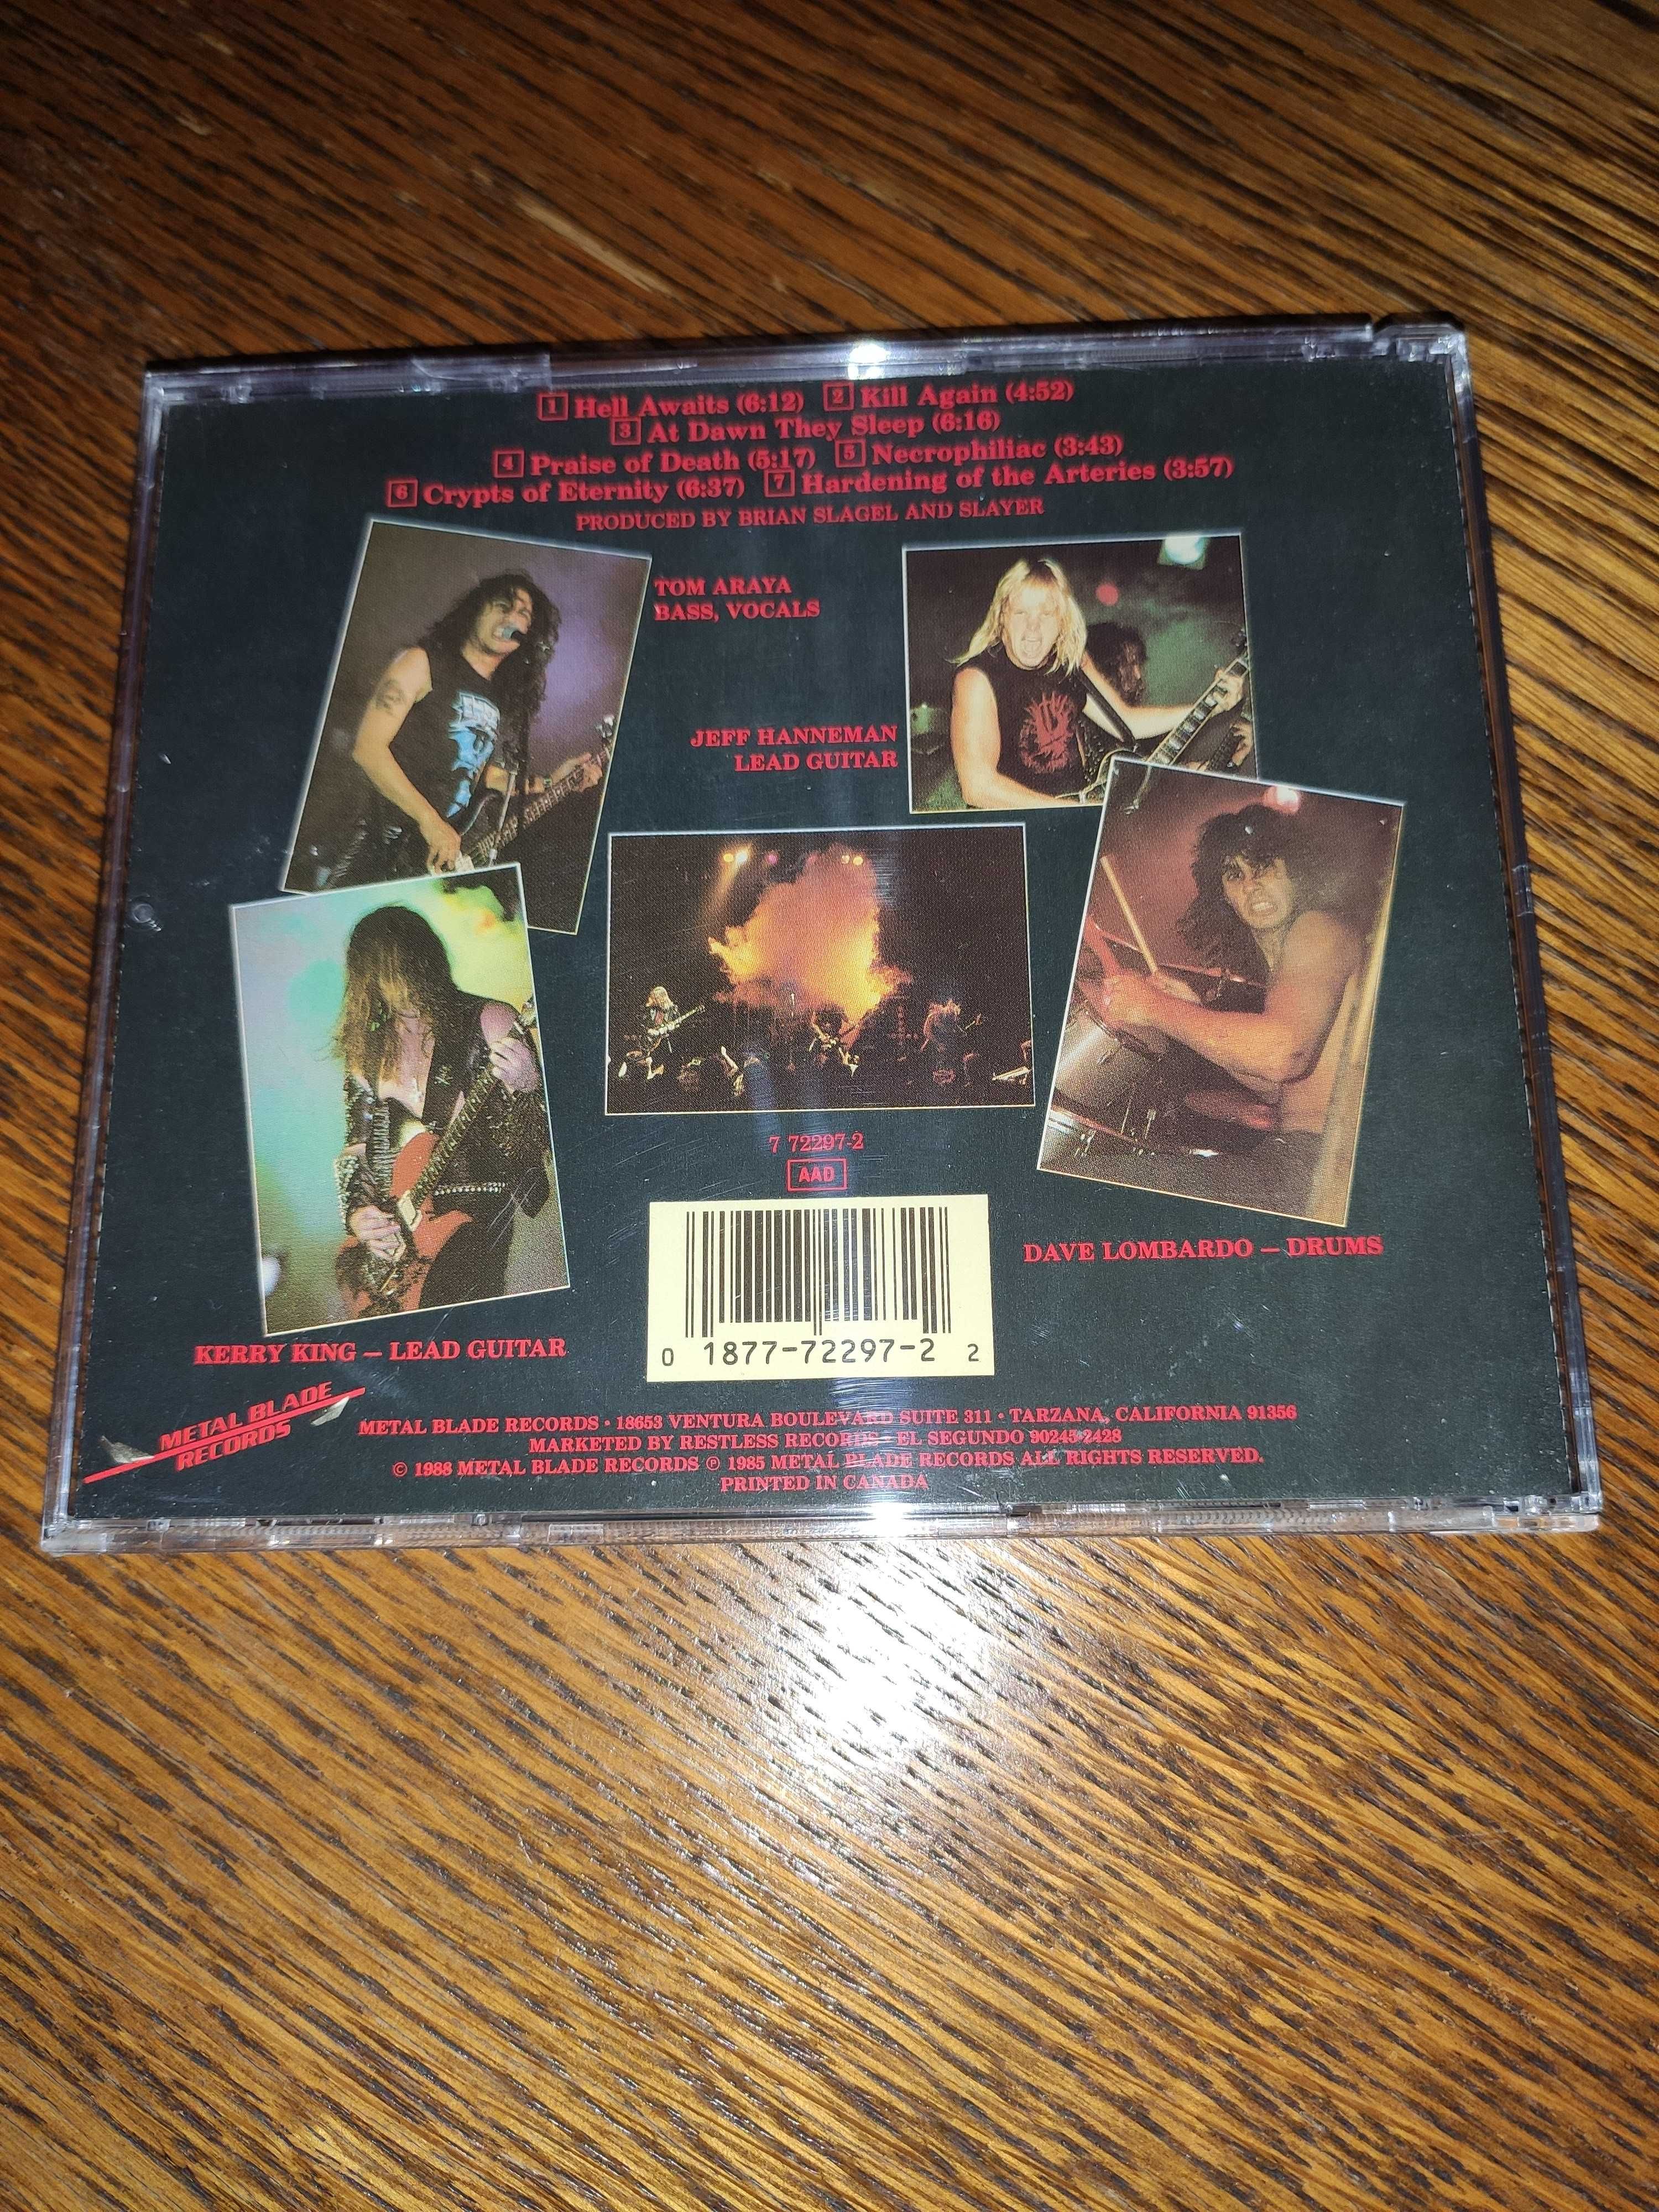 Slayer - Hell awaits, CD 1988, USA, Metal Blade